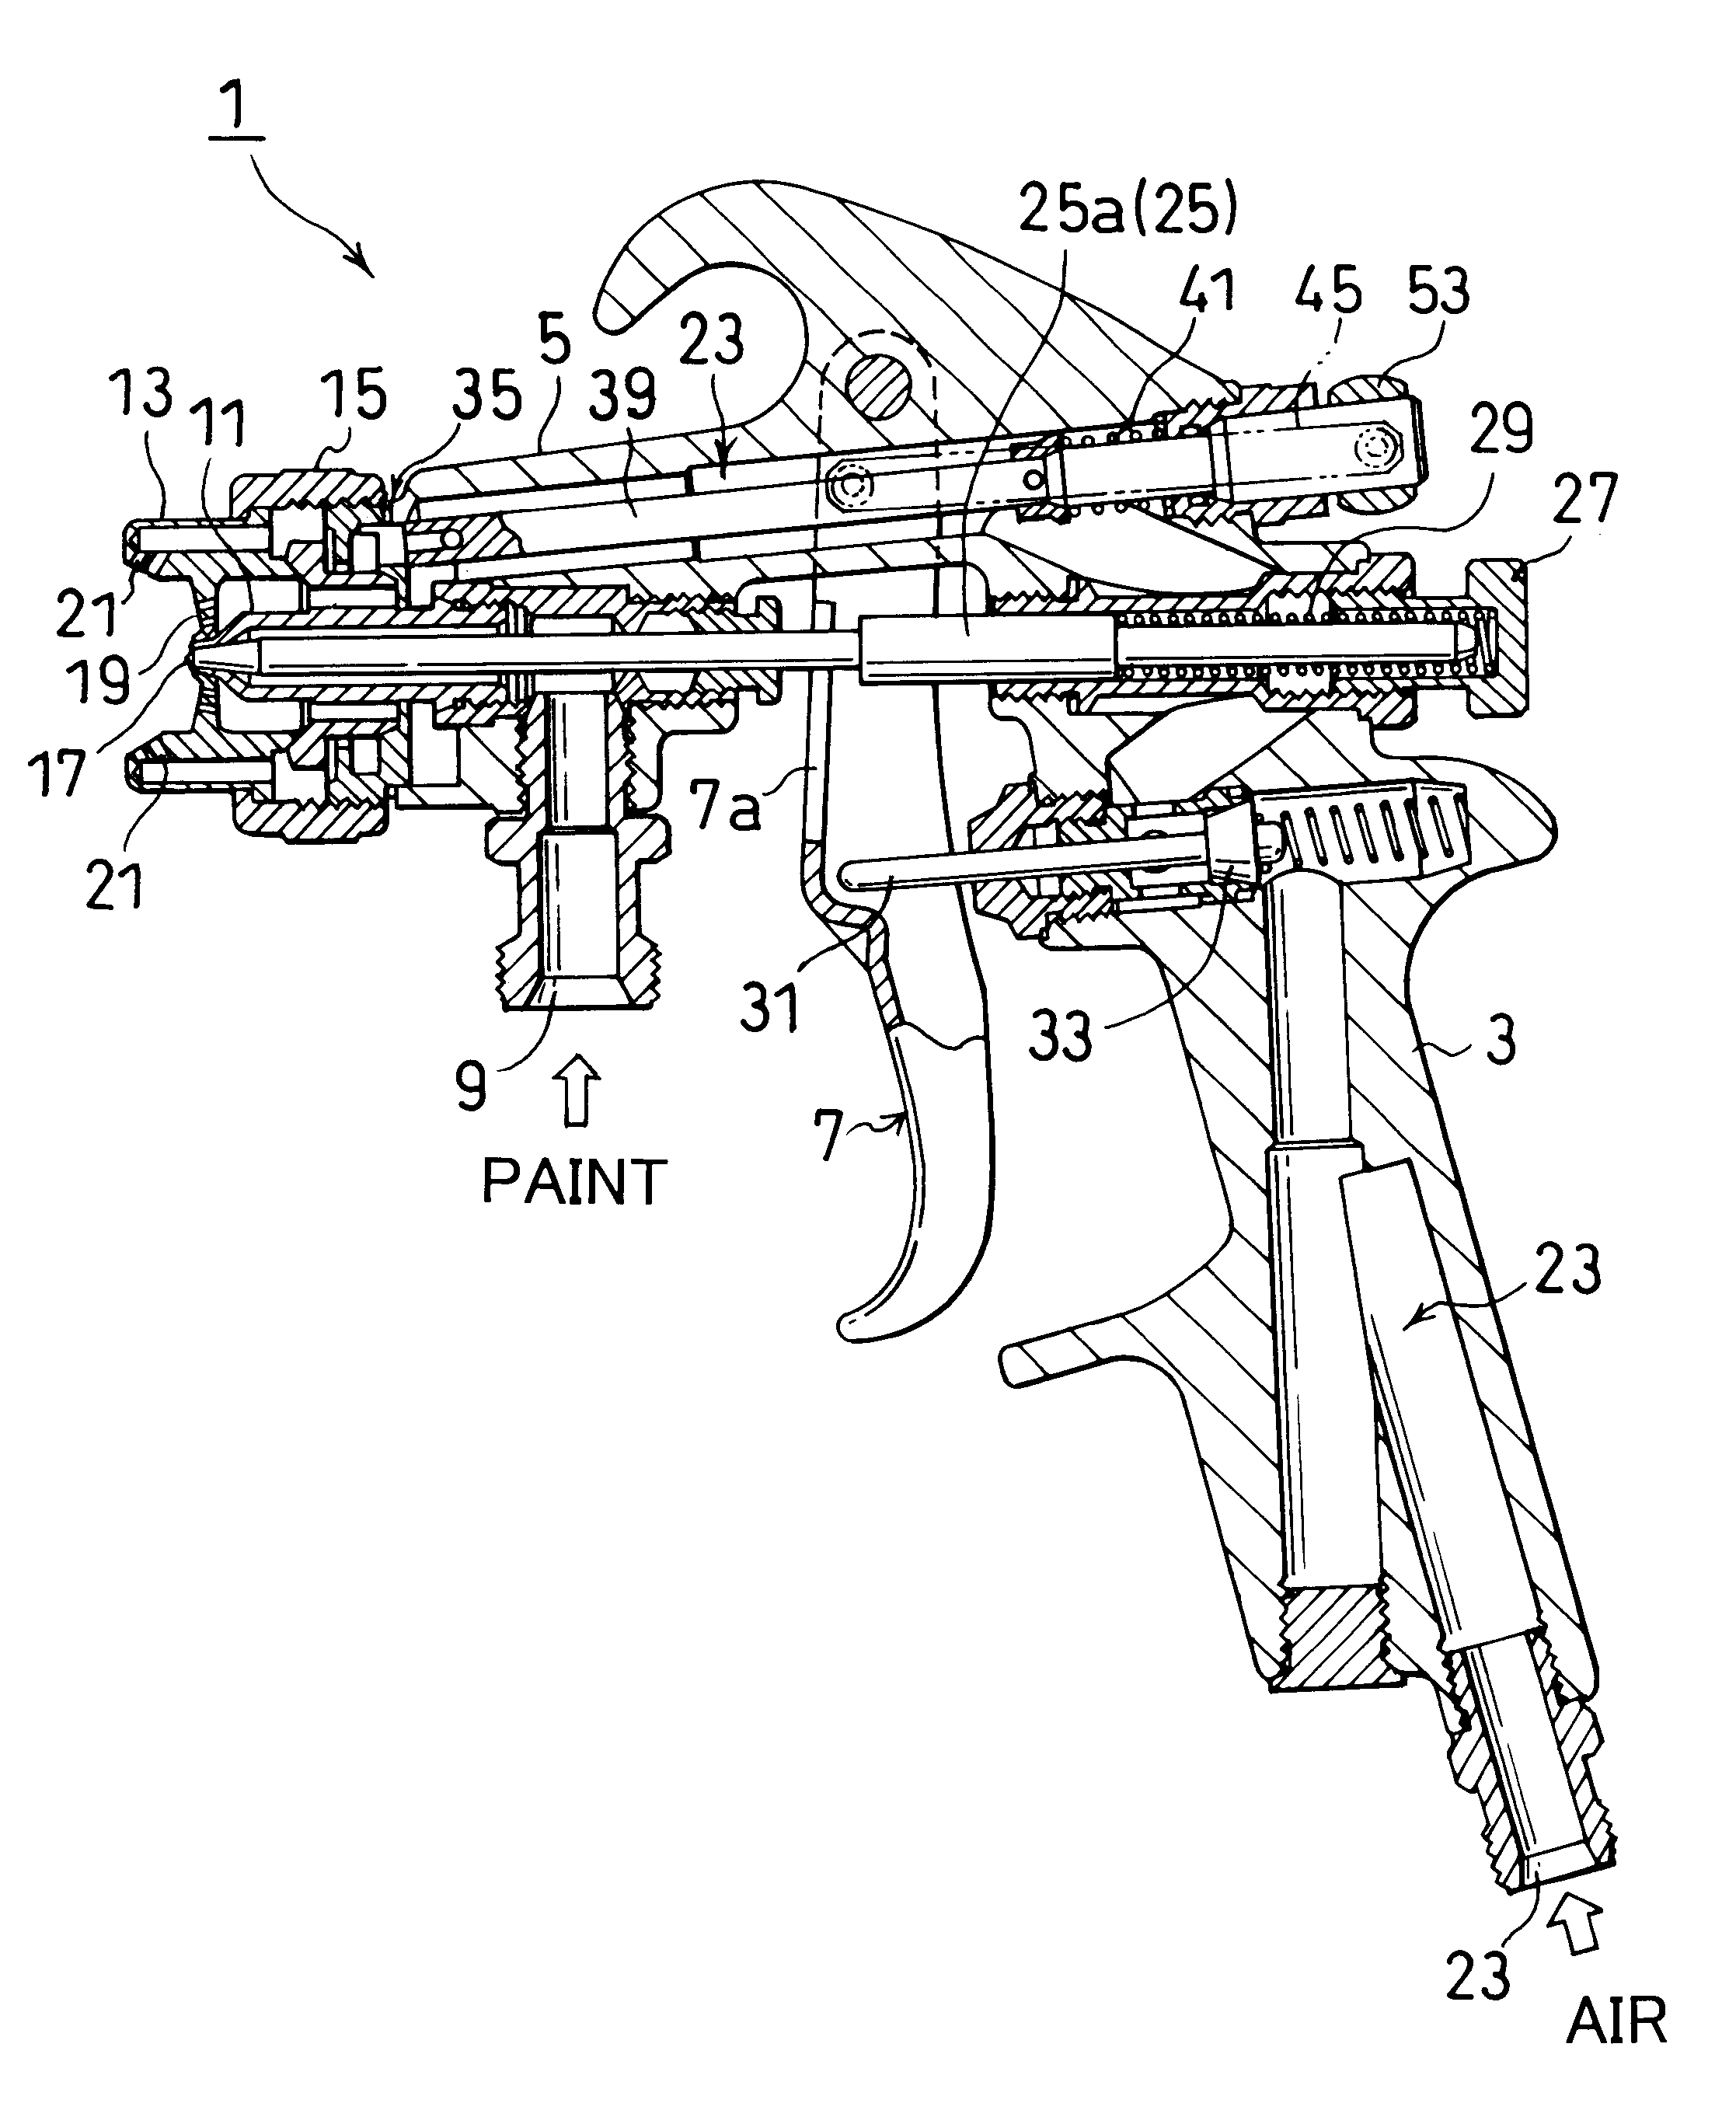 Aerosol spray gun